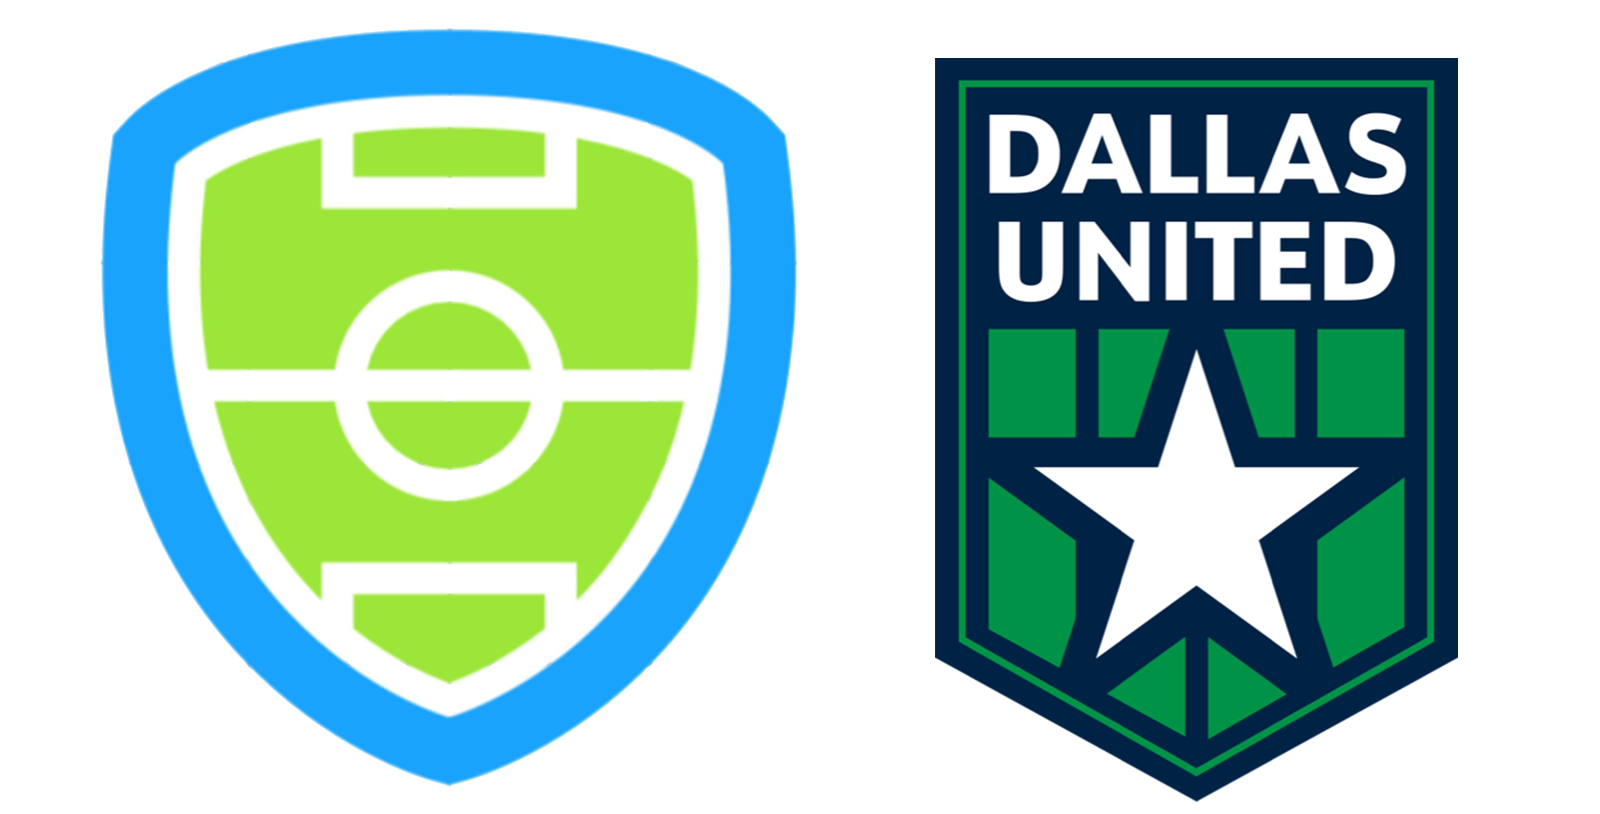 Dallas Soccer Alliance and Dallas United.